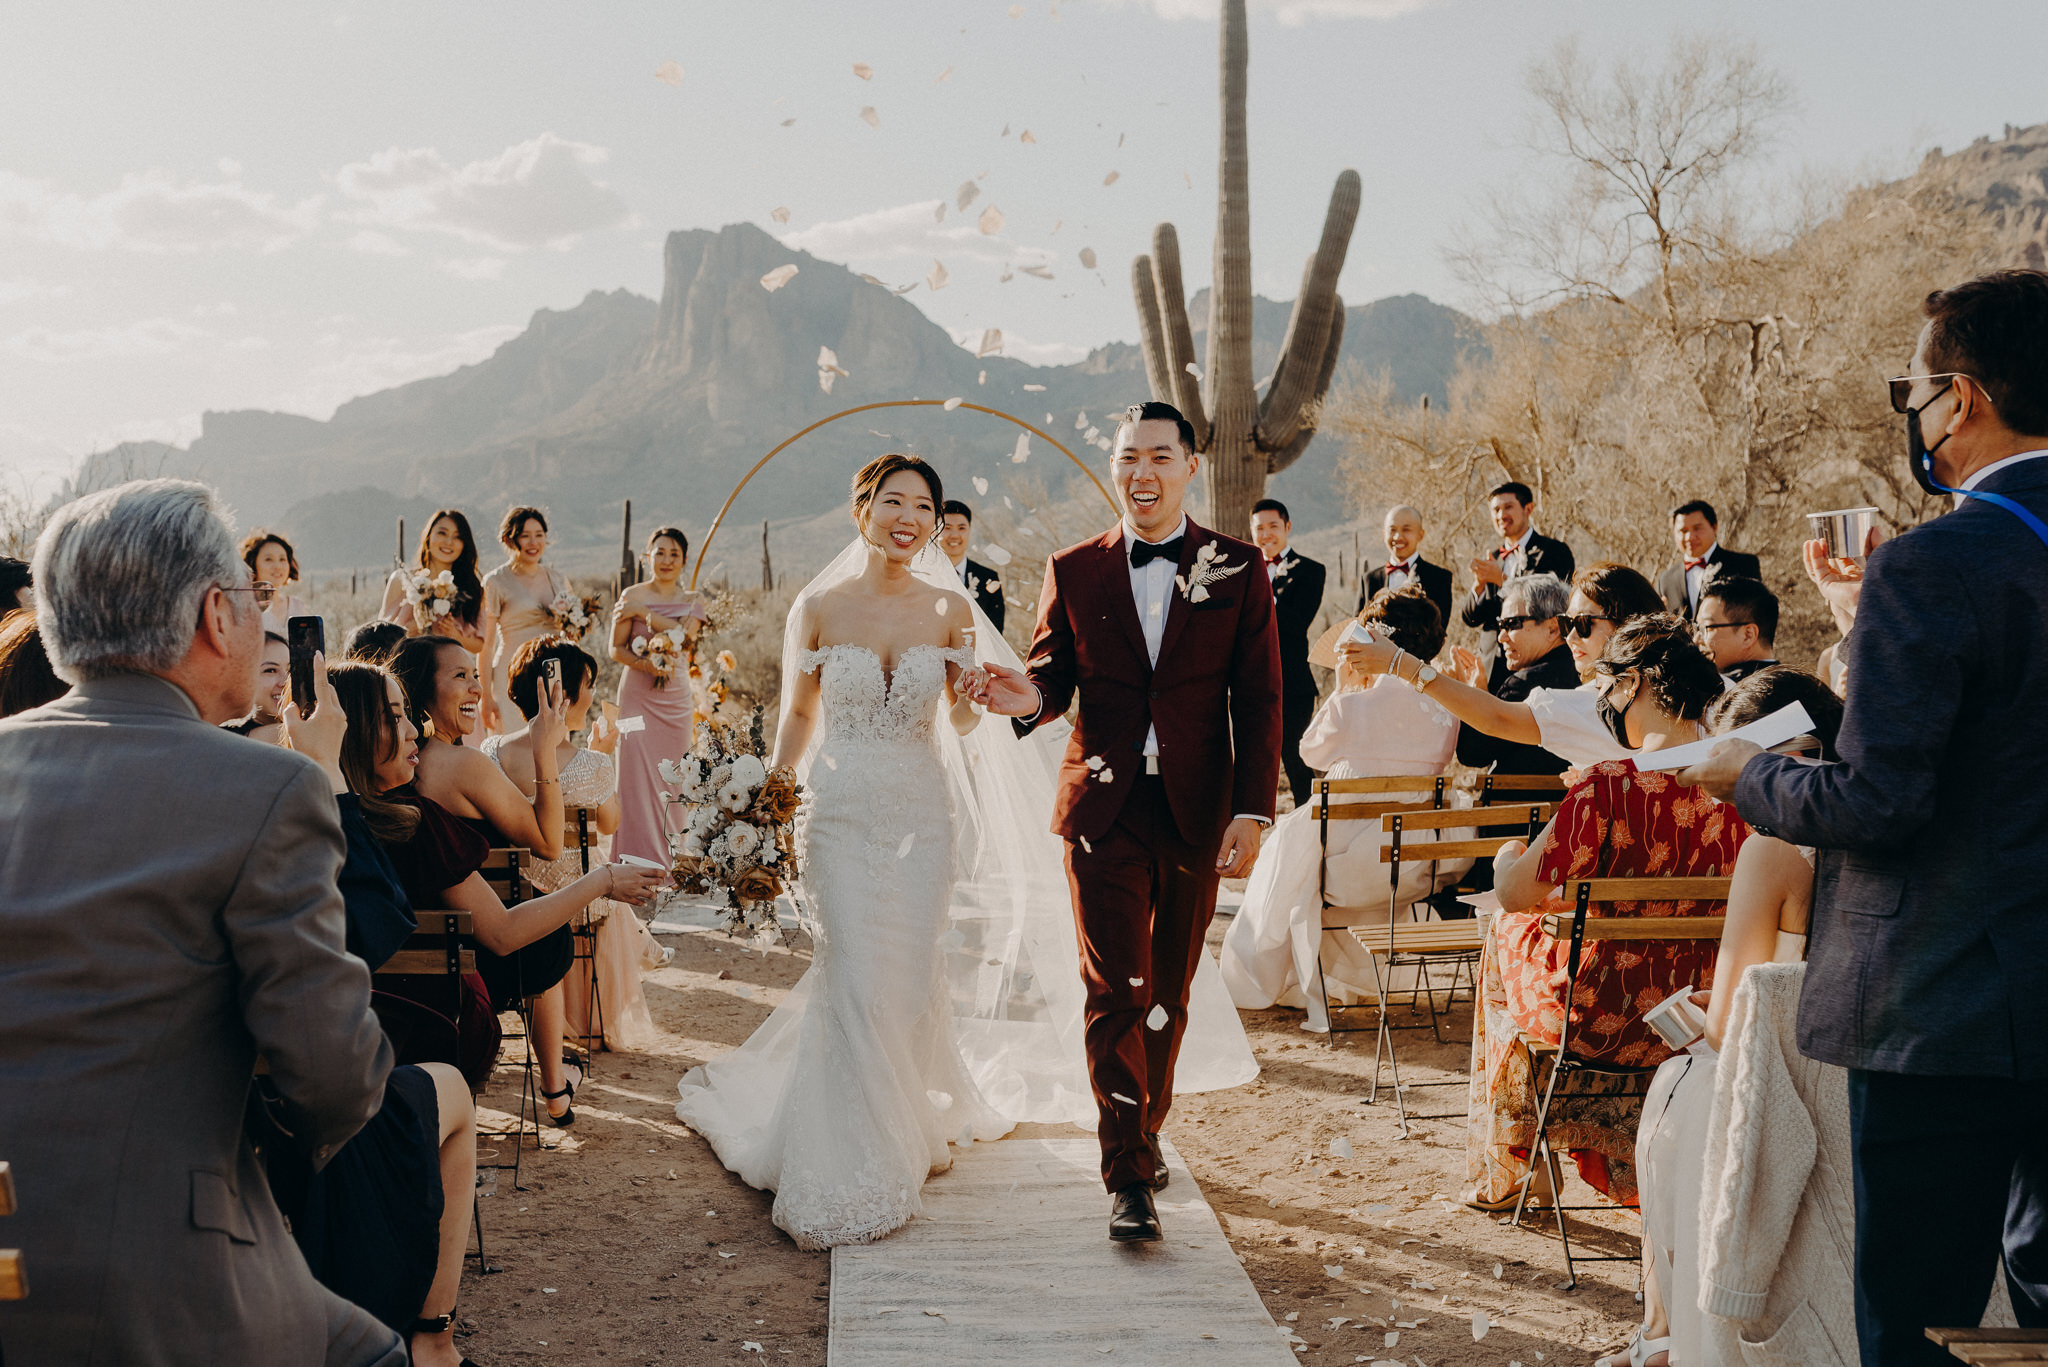 california wedding photograhers - desert elopement - supersition mountains - isaiahandtaylor.com-76.jpg